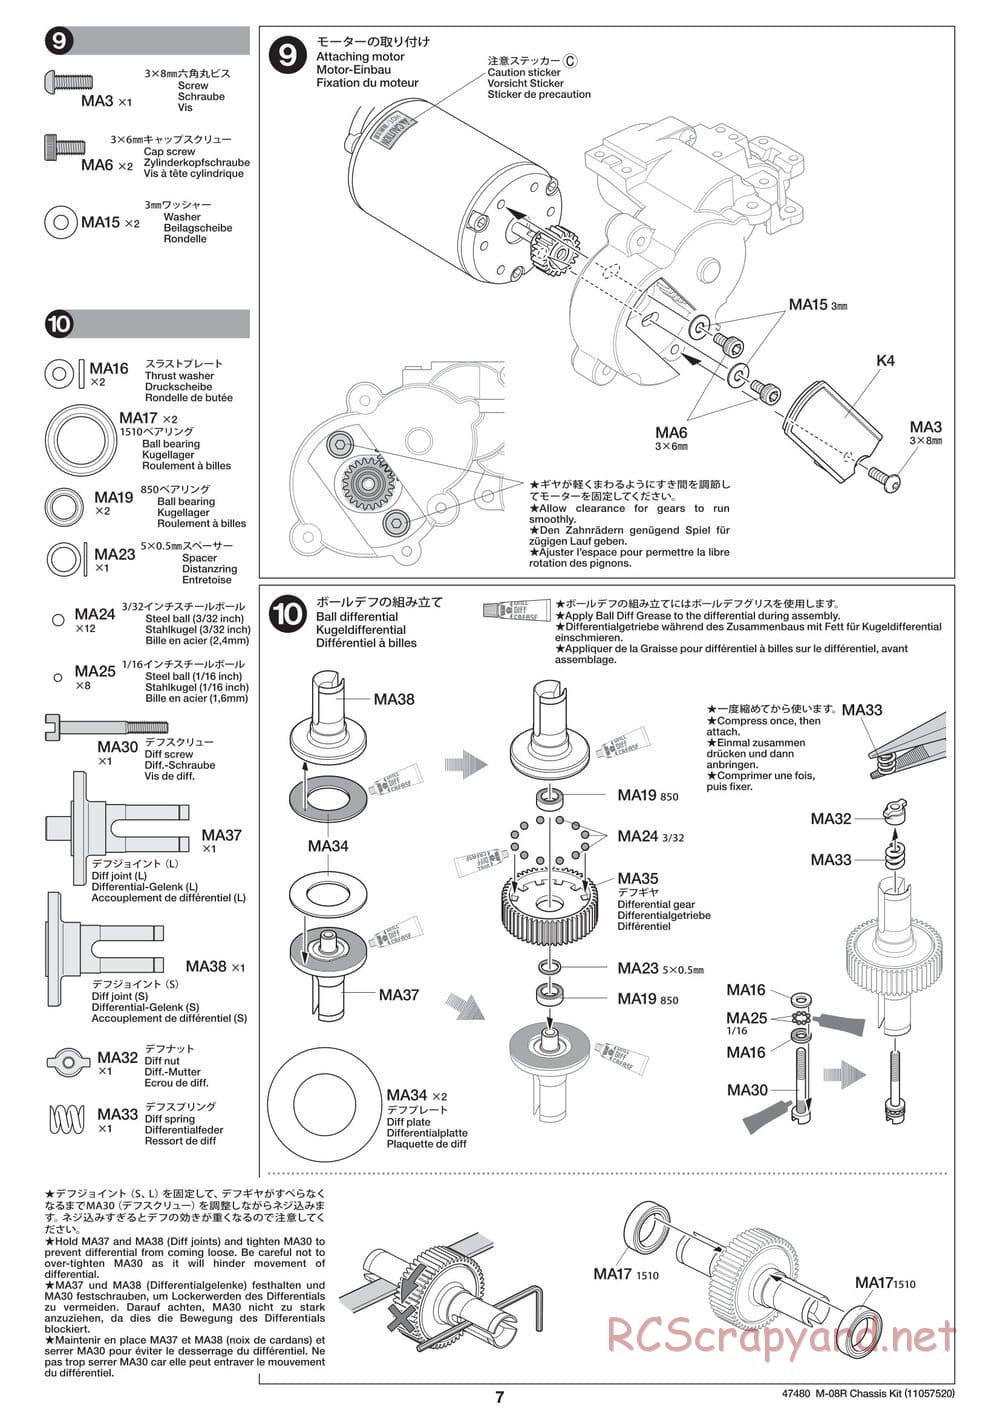 Tamiya - M-08R Chassis - Manual - Page 7